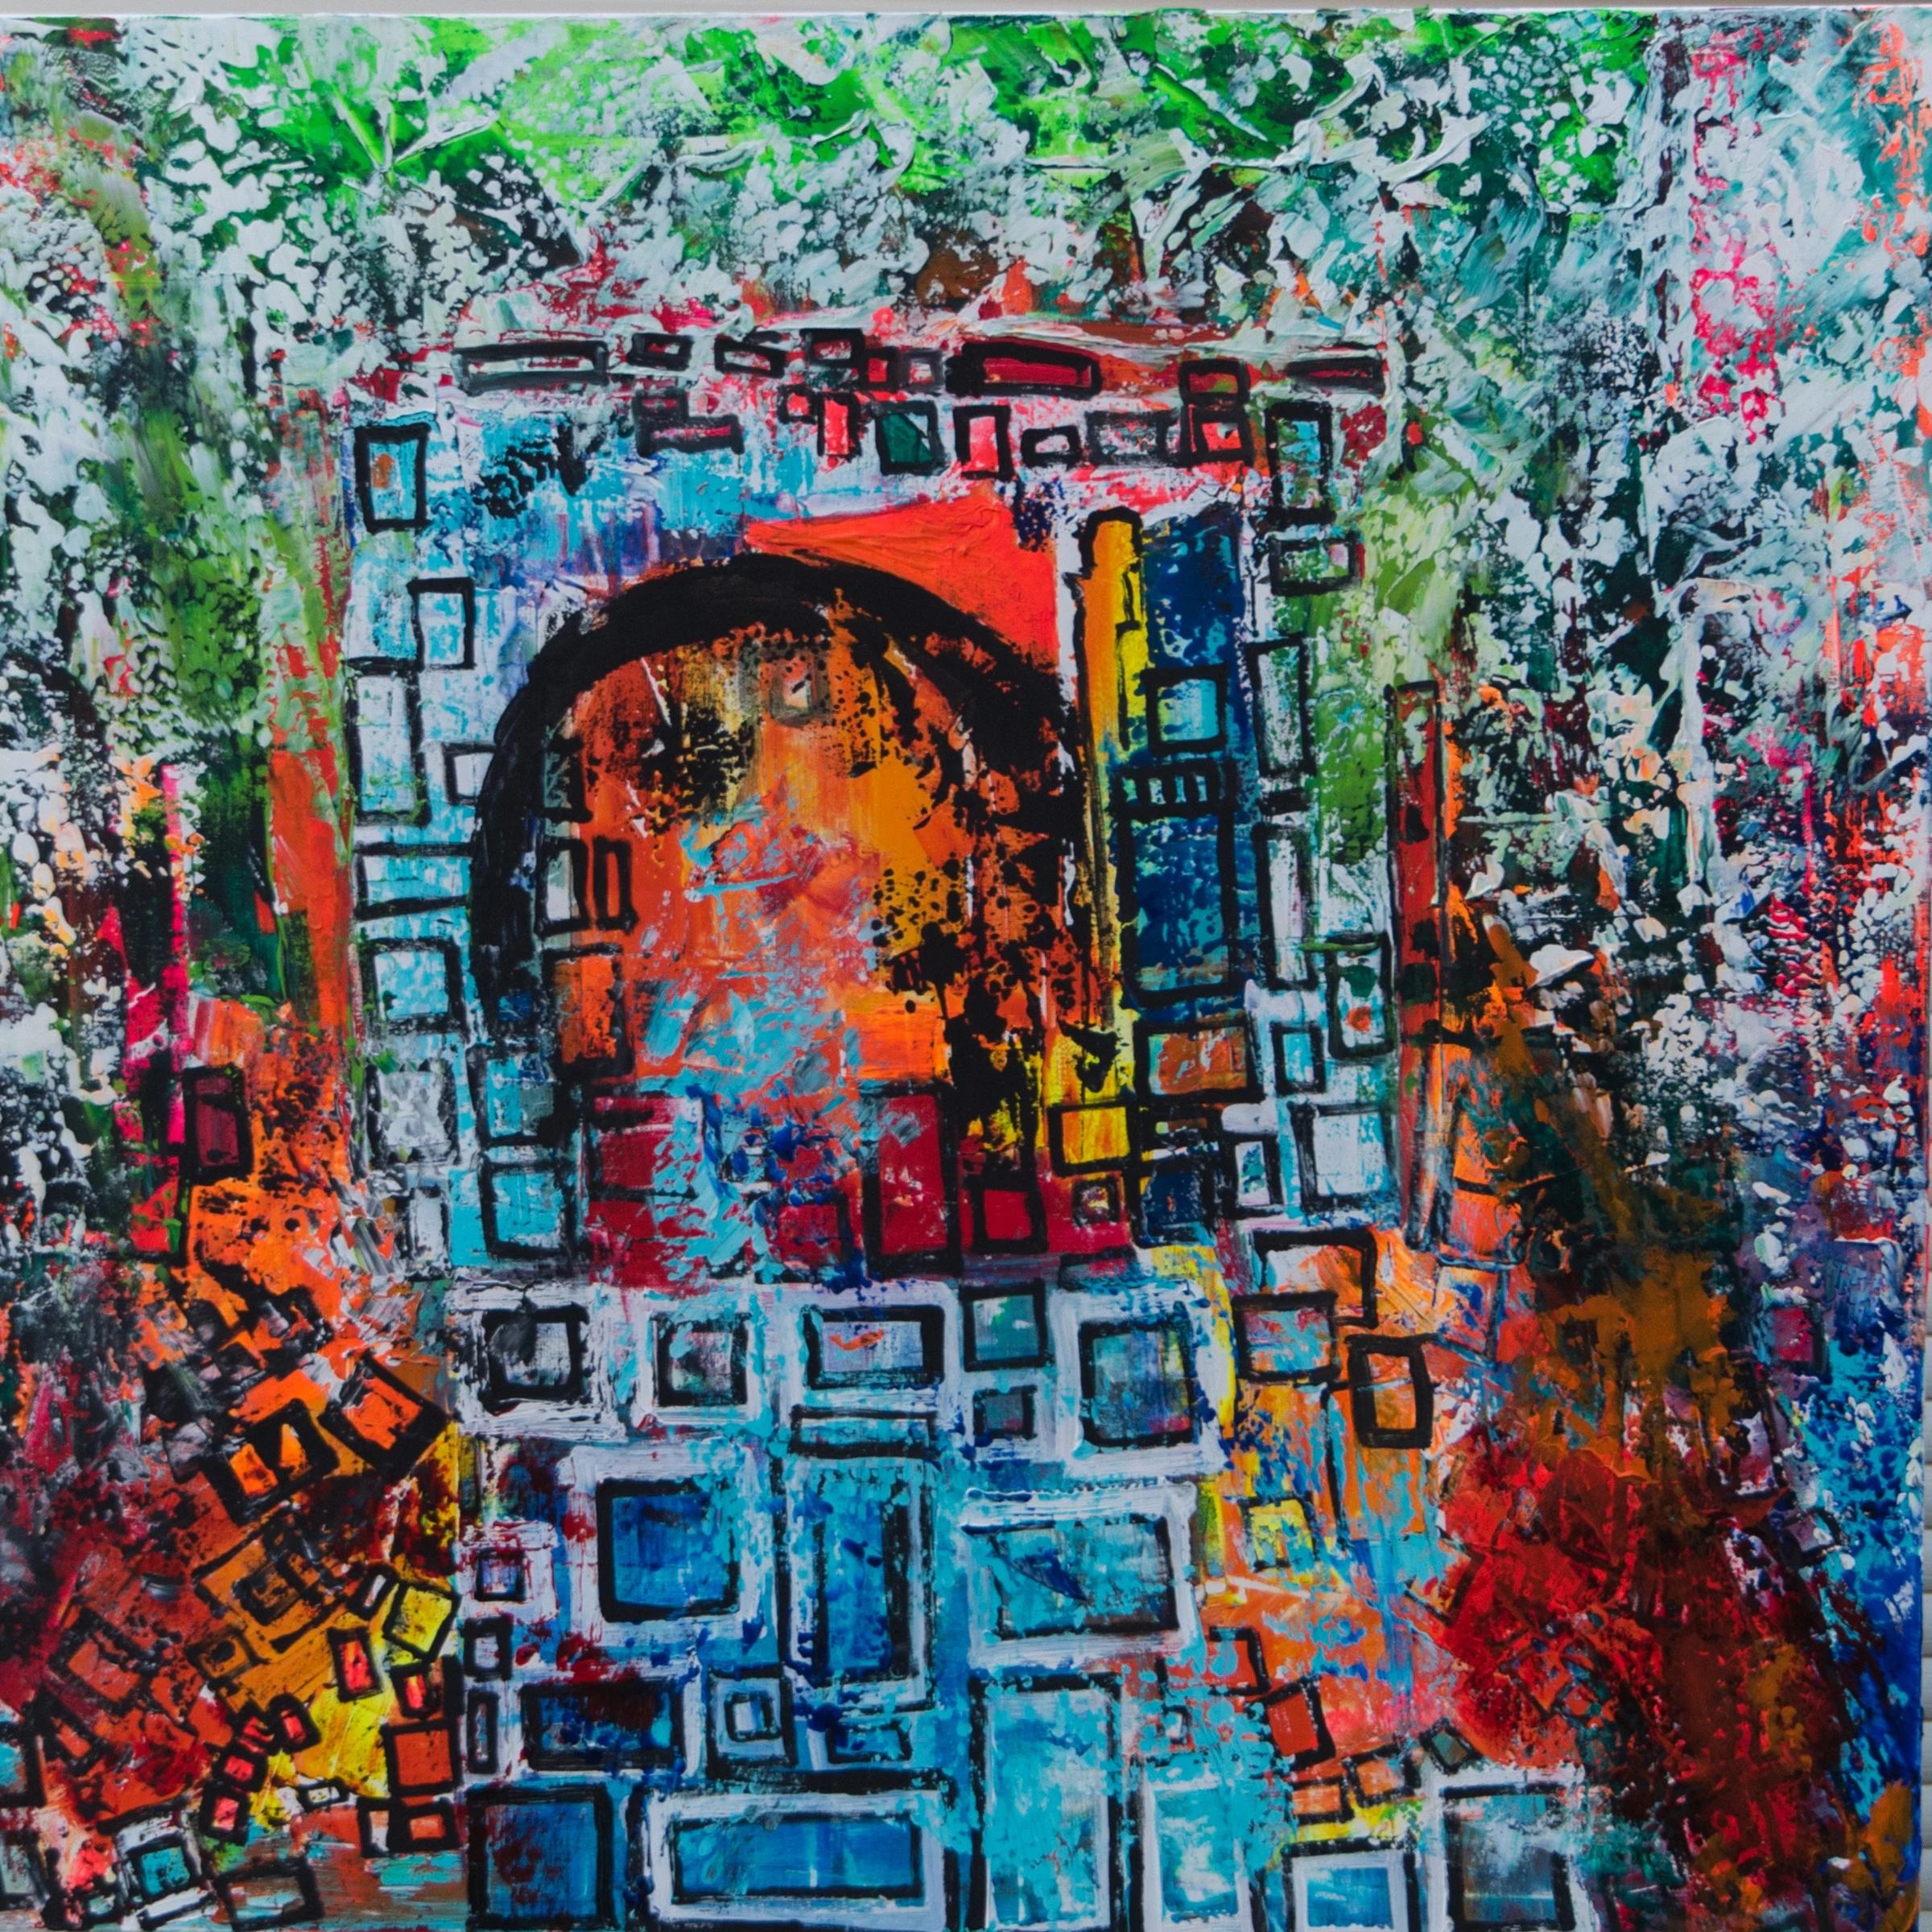 Abstraktes Gemälde „Iridescent“ aus Mischtechnik 47" x 47" Zoll von Ahmed Farid

Mischtechnik auf Leinwand

Farid wurde 1950 in Kairo, Ägypten, geboren, wo er heute lebt und arbeitet. Er ist ein autodidaktischer ägyptischer Maler, der eine private